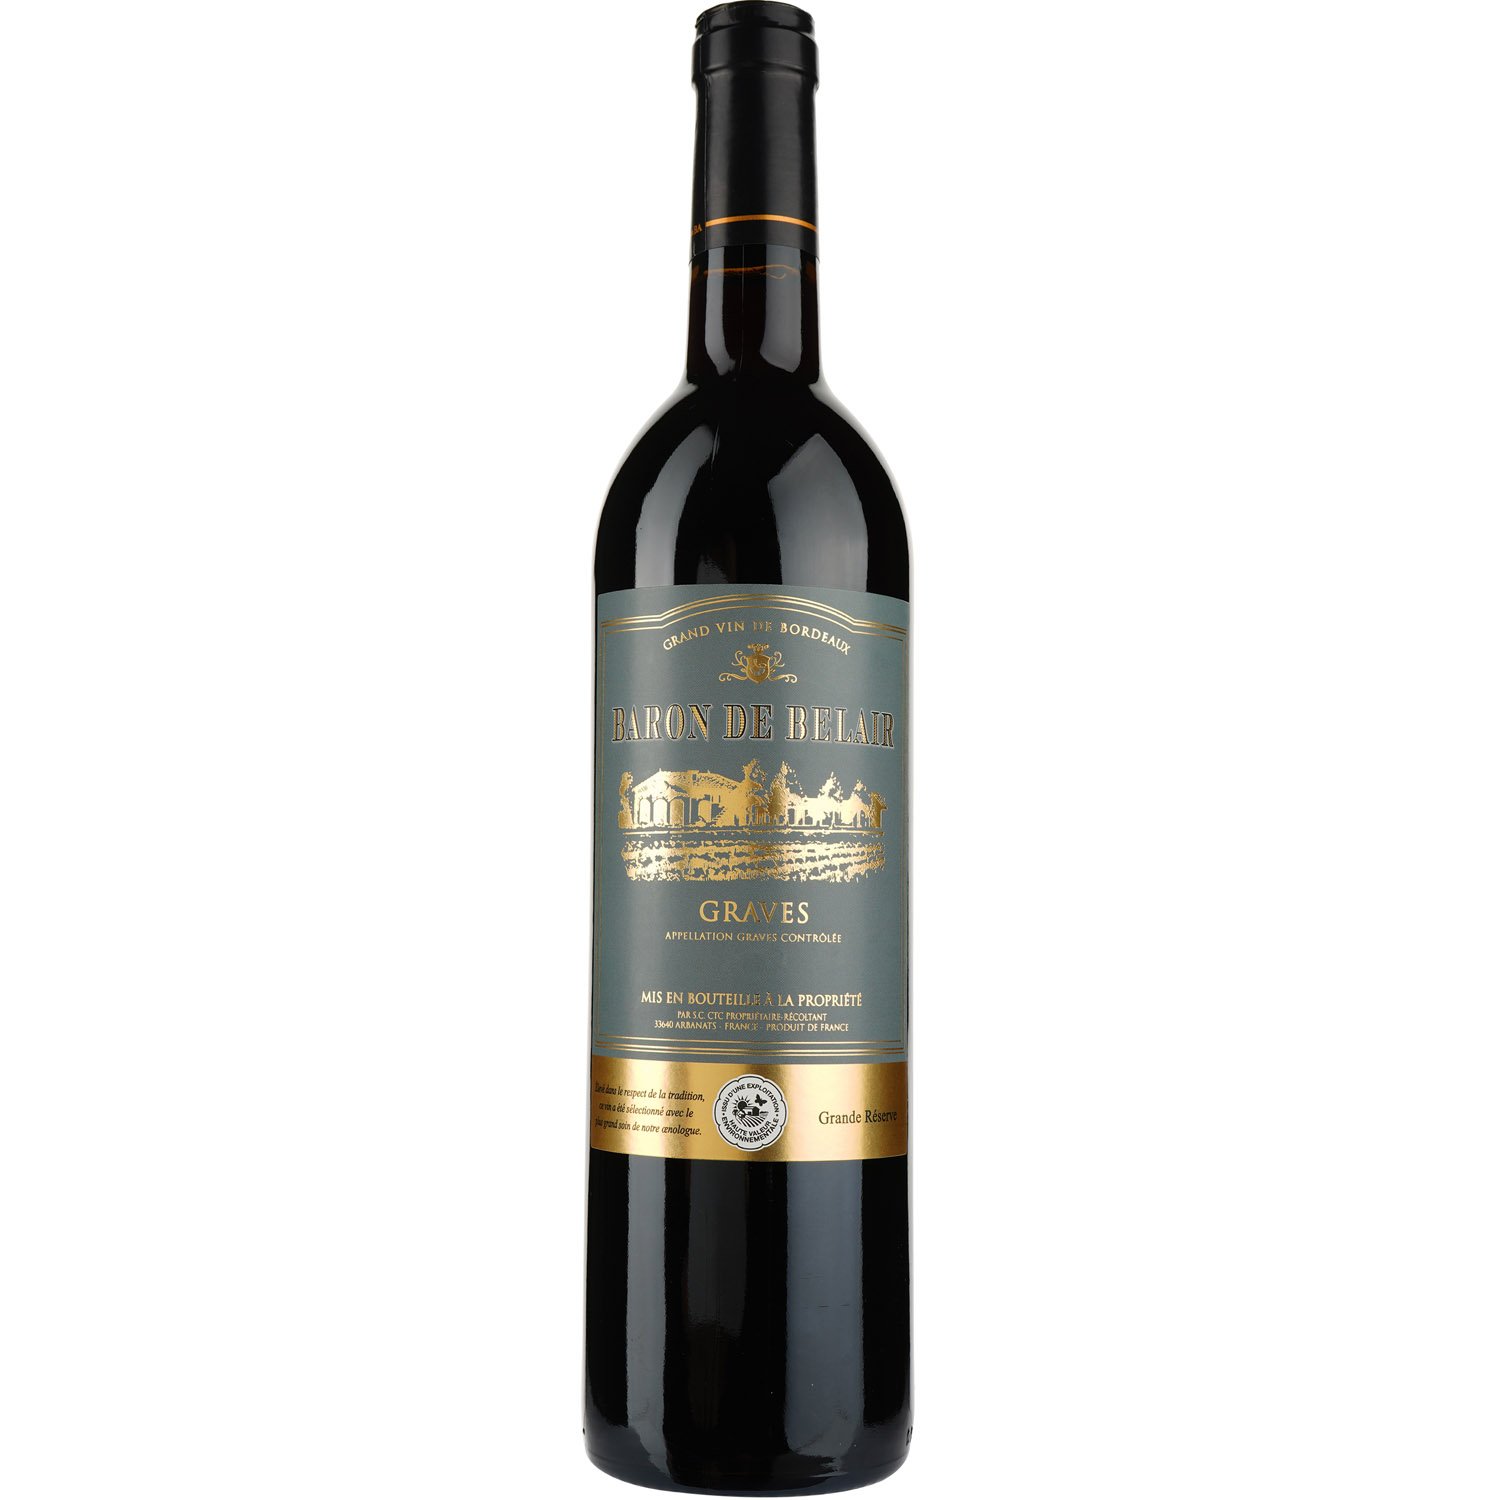 Вино Baron de Belair AOP Graves 2015, красное, сухое, 0,75 л - фото 1